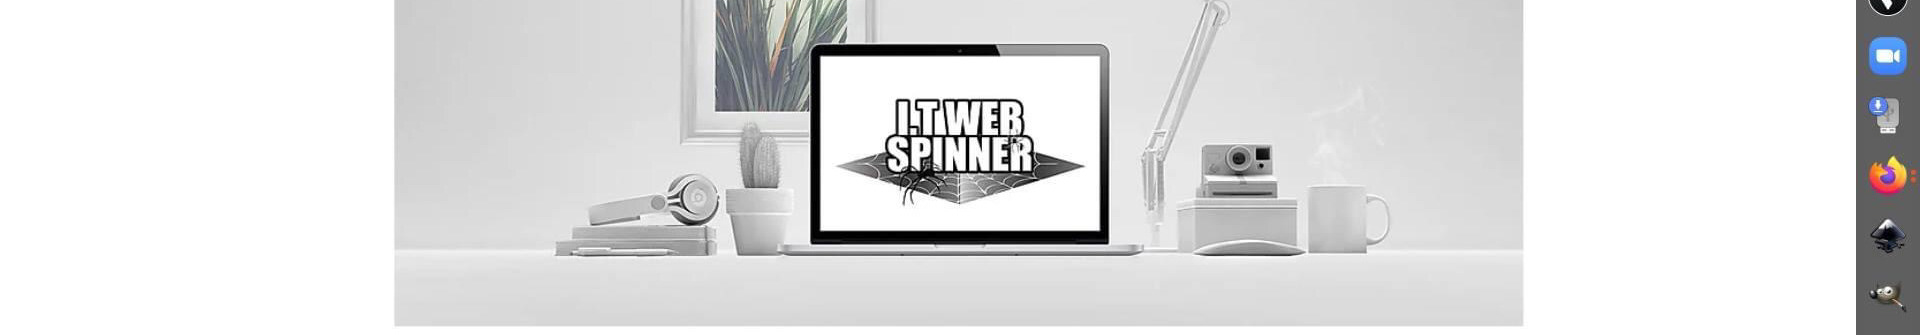 I.T Web Spinner's profile banner